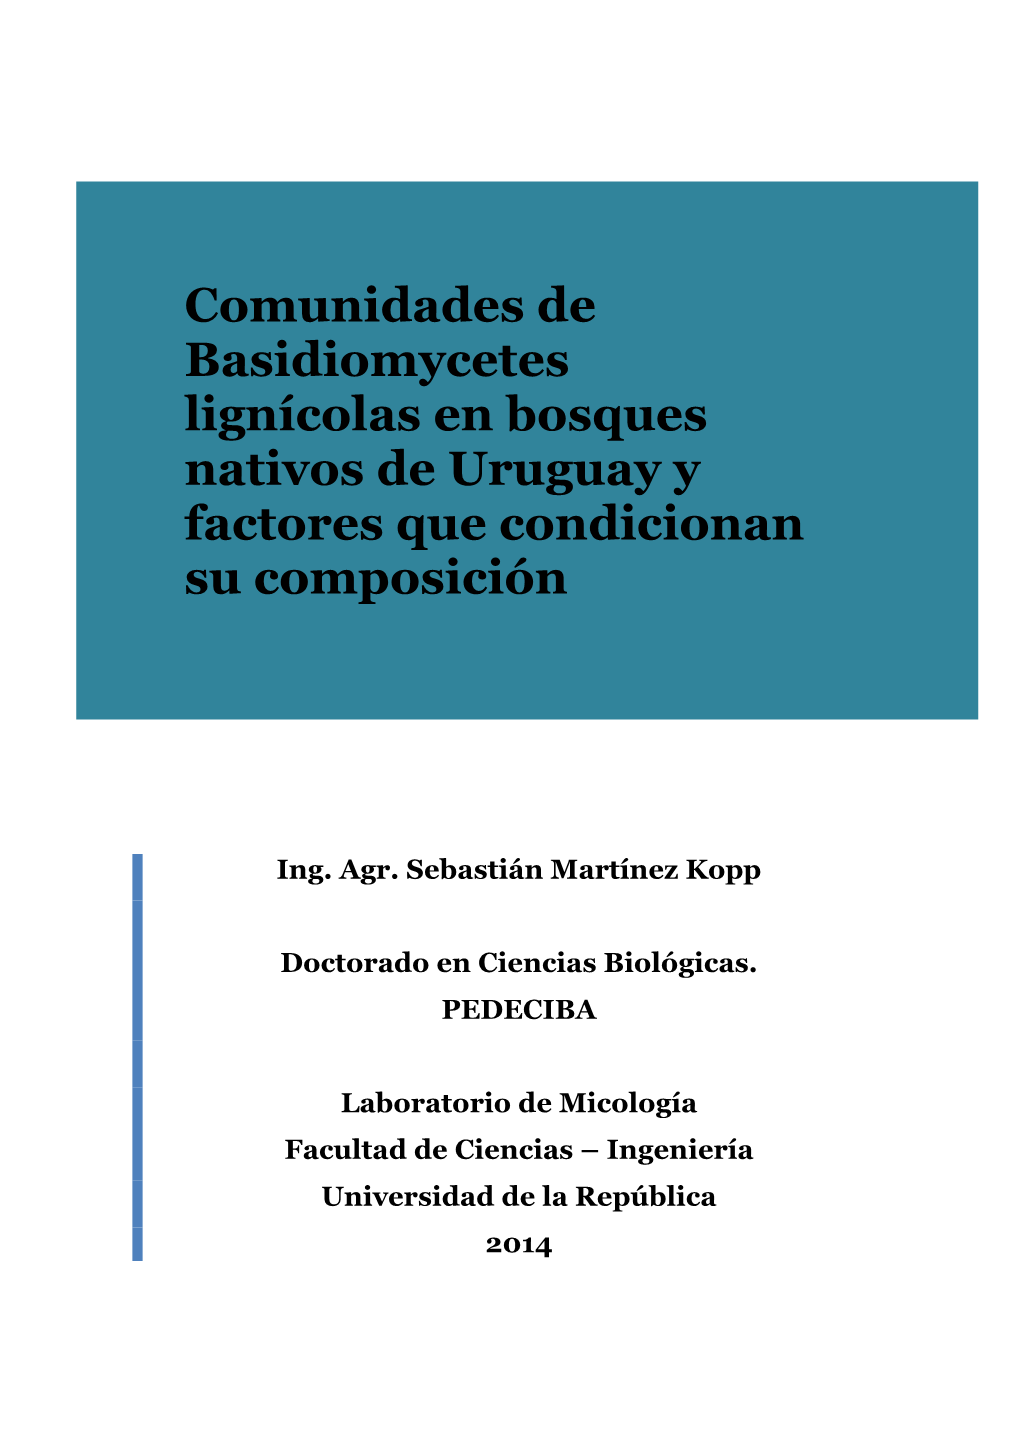 Comunidades De Basidiomycetes Lignícolas En Bosques Nativos De Uruguay Y Factores Que Condicionan Su Composición